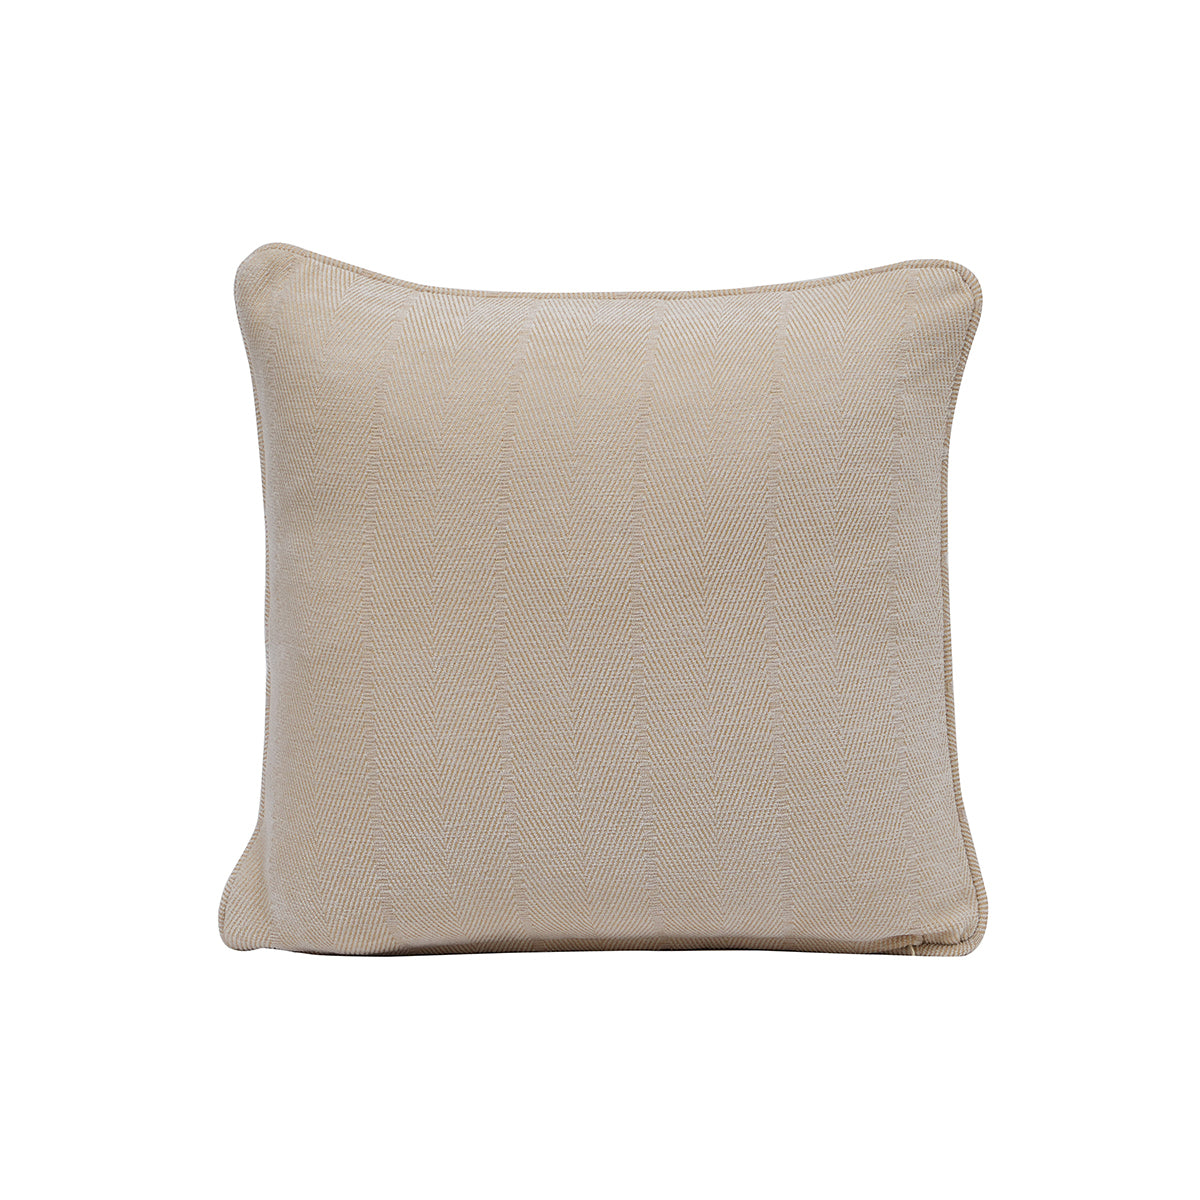 Caroline Herringbone Textured Soft Woven Beige Cushion Cover